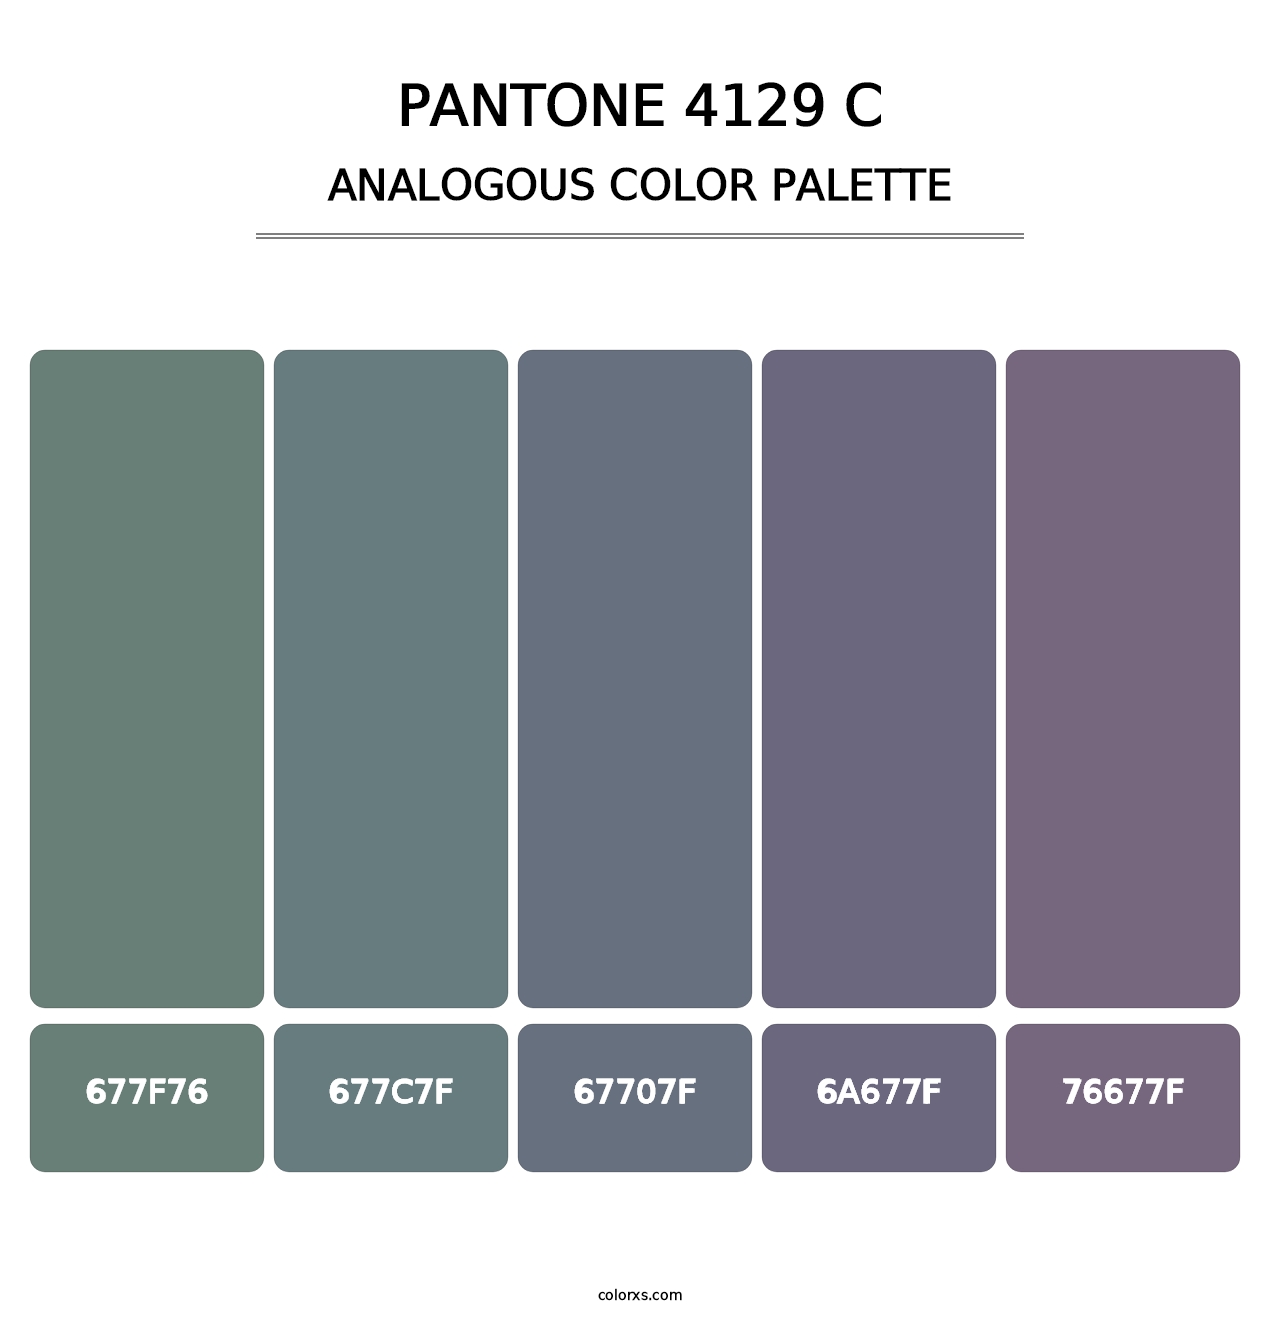 PANTONE 4129 C - Analogous Color Palette